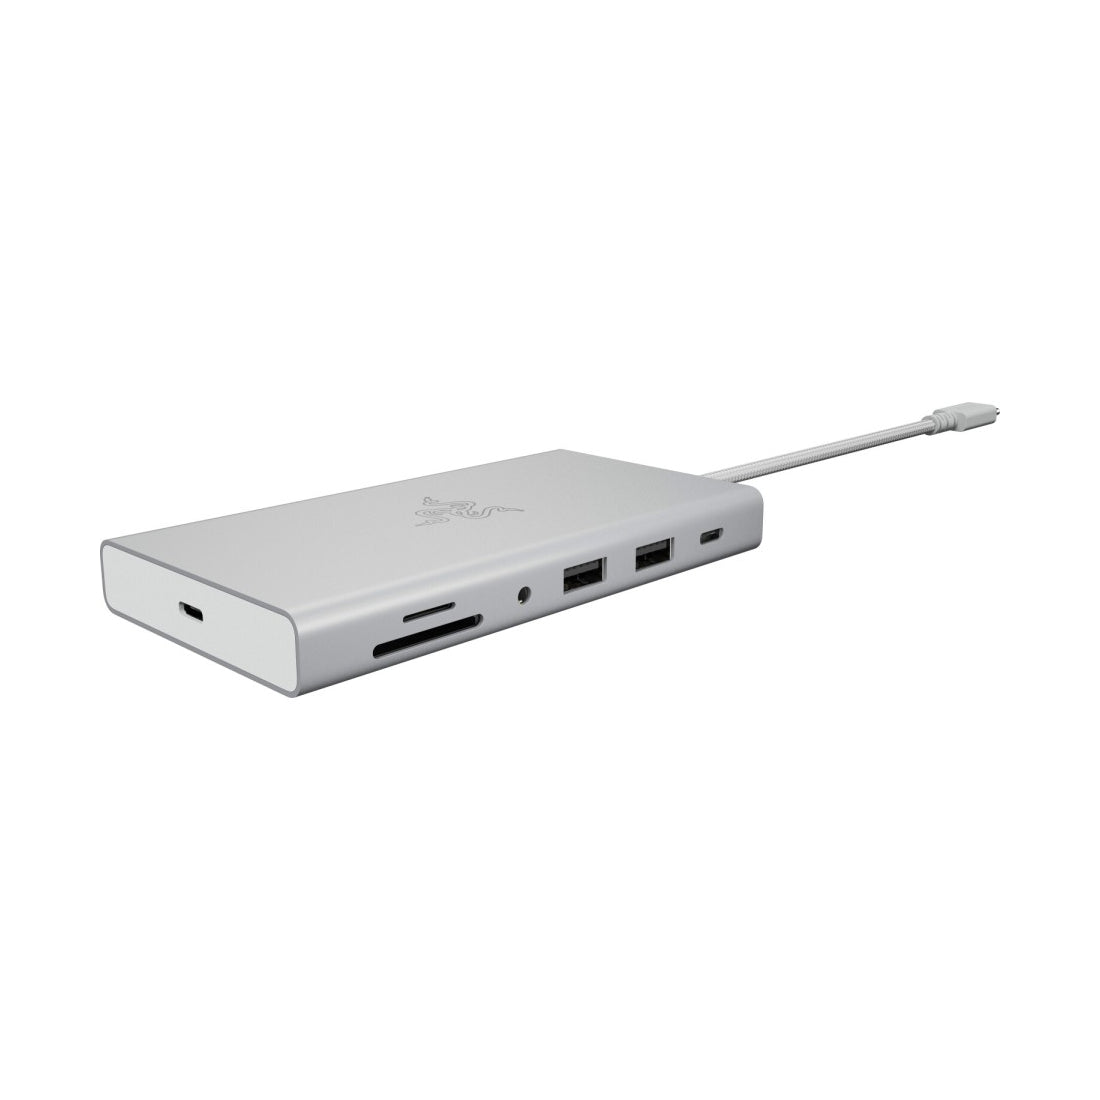 Razer USB C Dock 11 in 1 Multiport Adapter - Mercury - محول